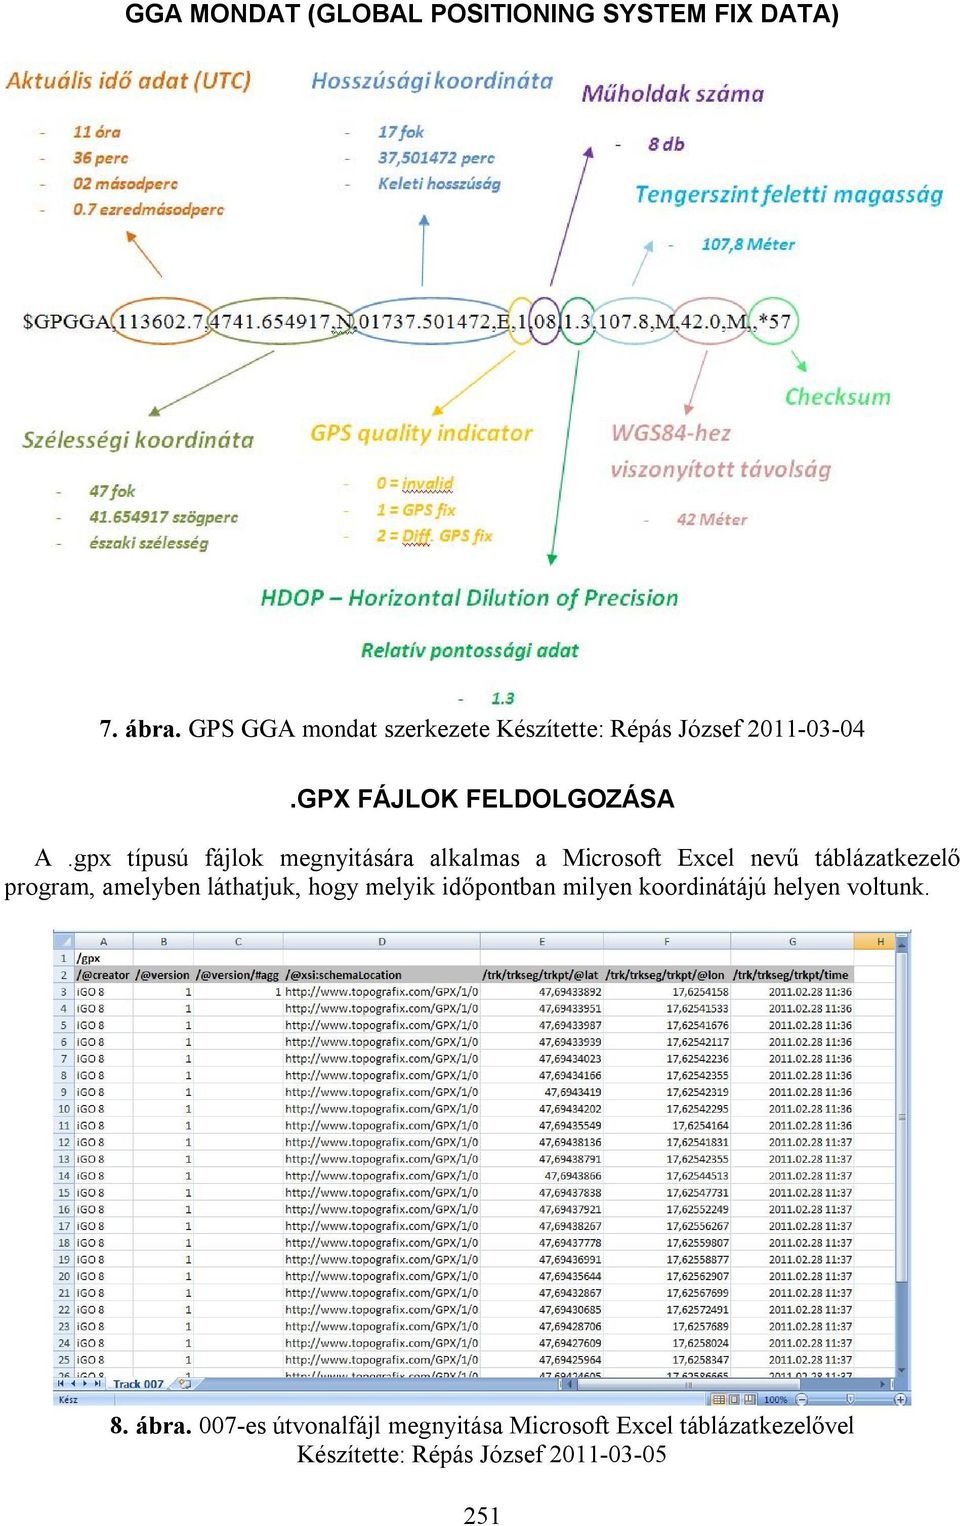 gpx típusú fájlok megnyitására alkalmas a Microsoft Excel nevű táblázatkezelő program, amelyben